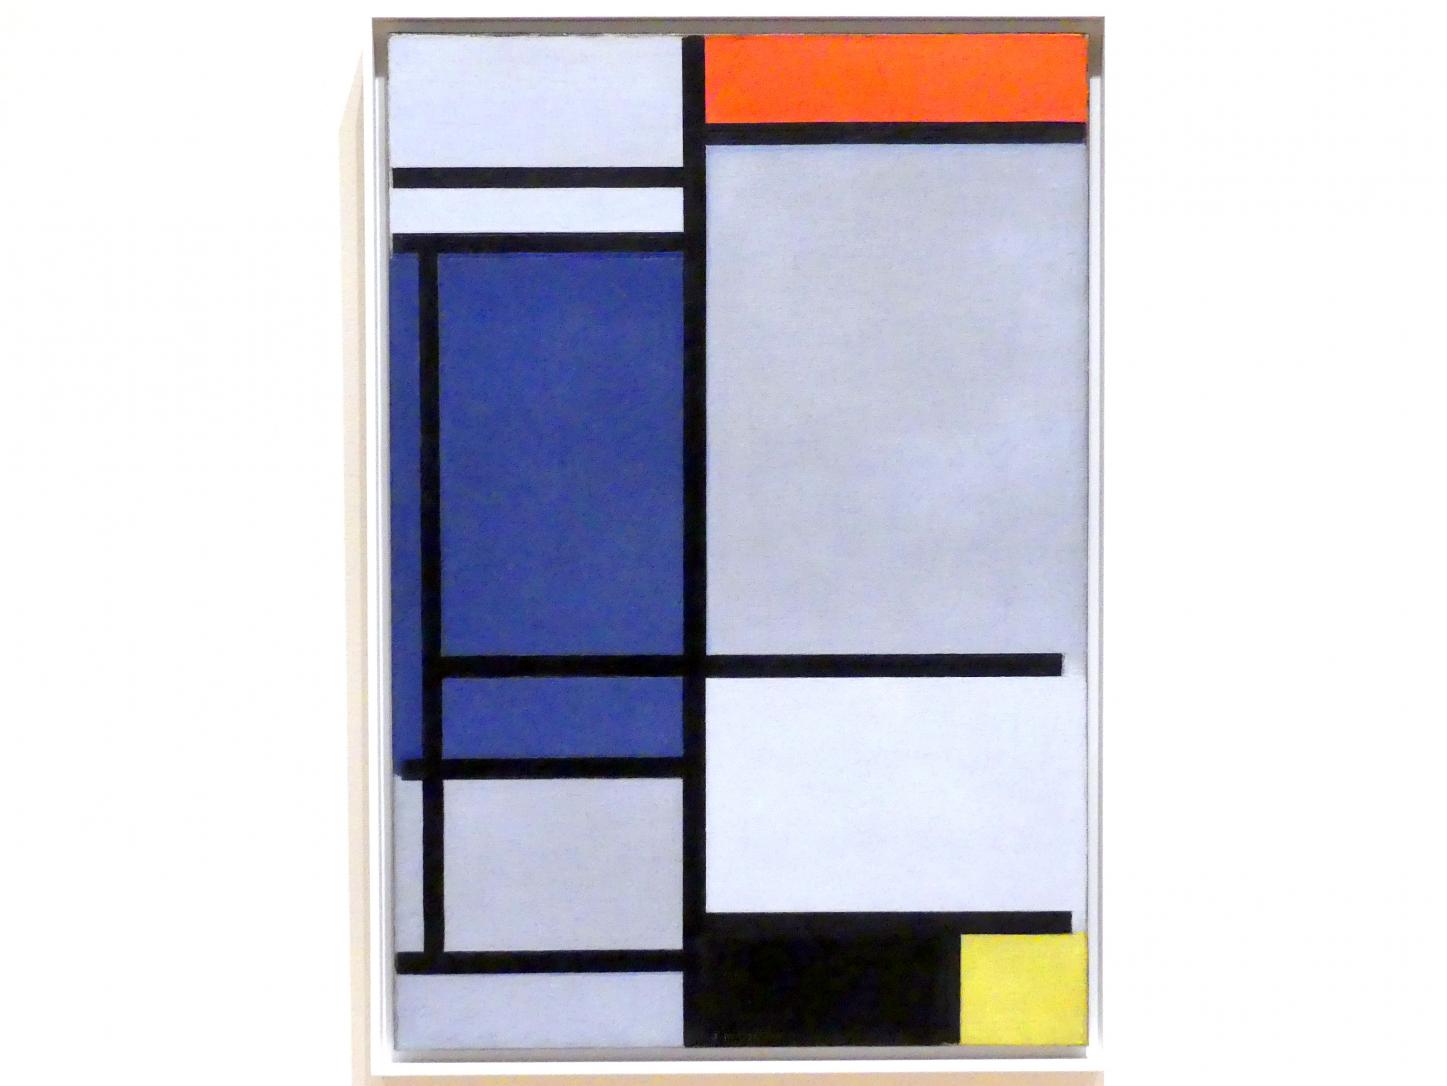 Piet Mondrian (1908–1942), Komposition mit Rot, Blau, Schwarz, Gelb und Grau, New York, Museum of Modern Art (MoMA), Saal 512, 1921